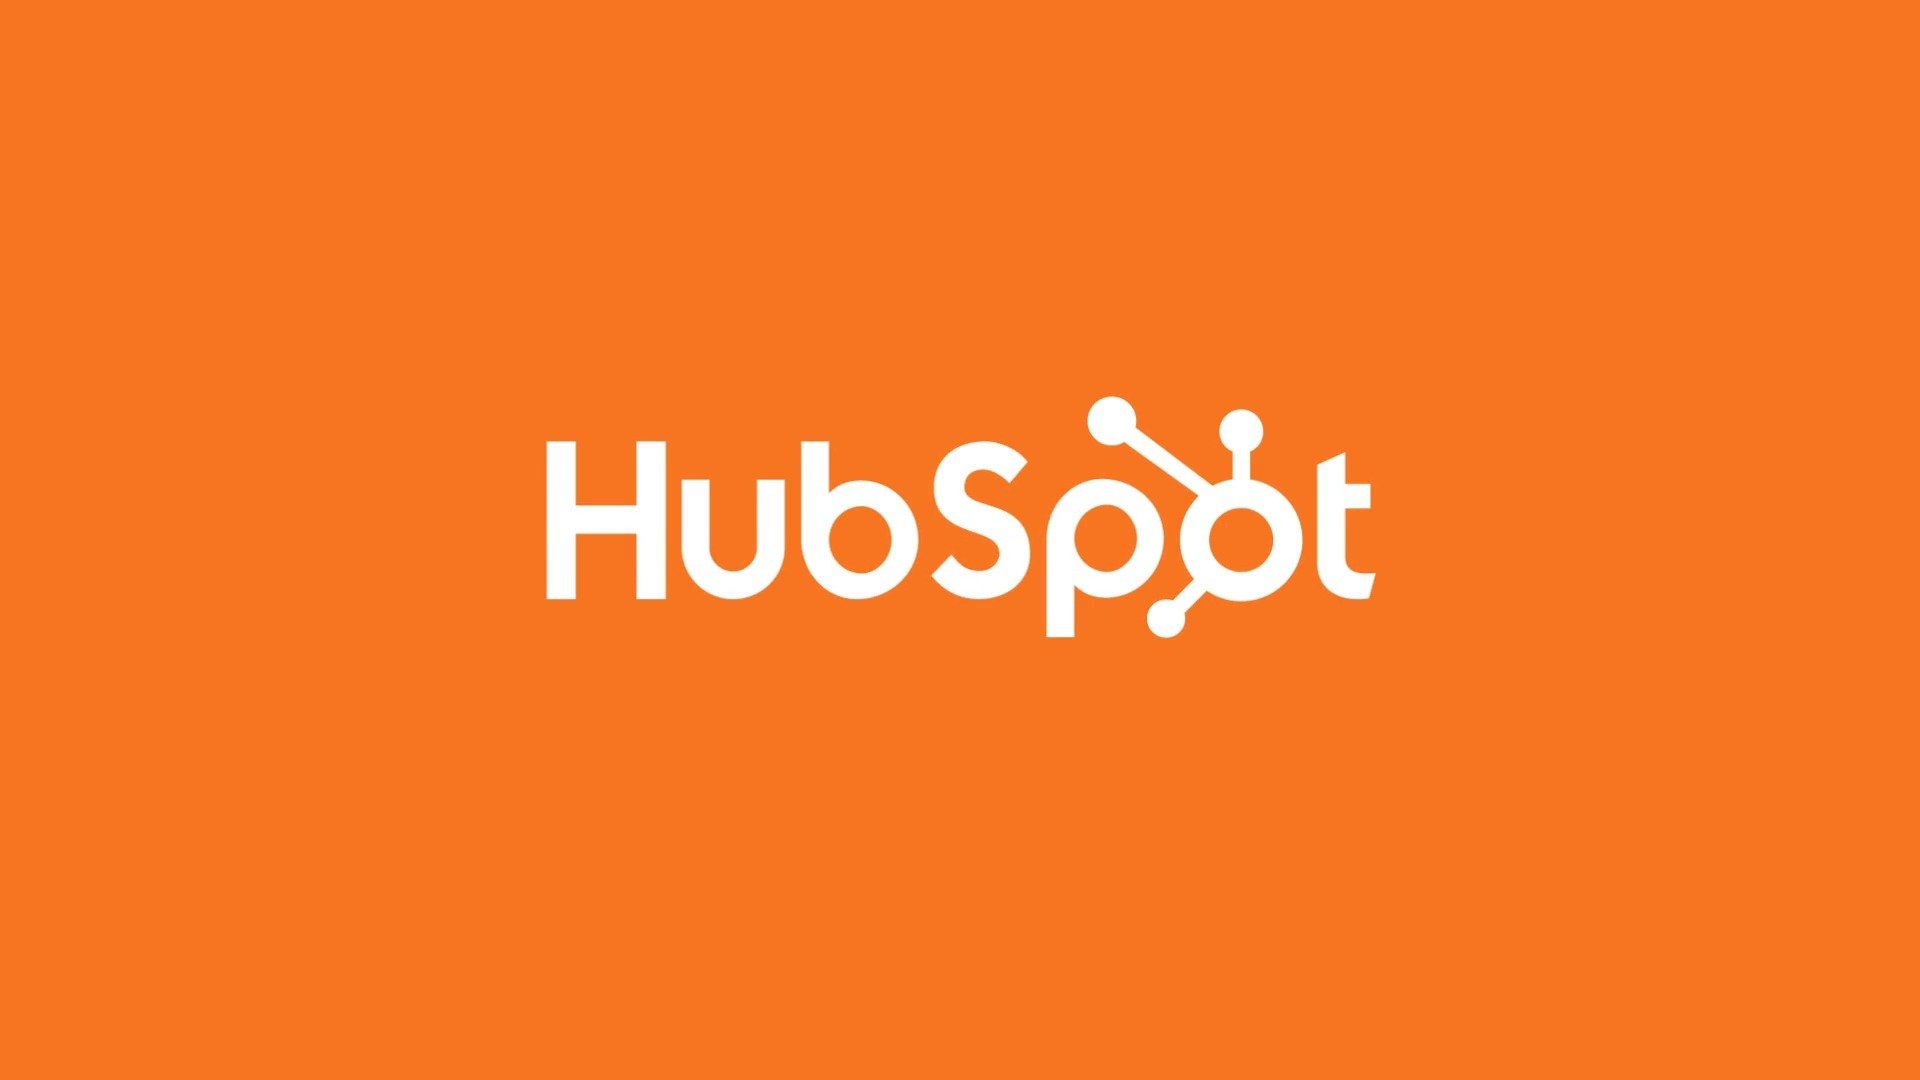 Để trải nghiệm các tính năng độc đáo của HubSpot, hãy xem thêm các hình ảnh liên quan đến từ khóa này. HubSpot là một công cụ tuyệt vời cho các doanh nghiệp để quản lý khách hàng và tăng doanh số.